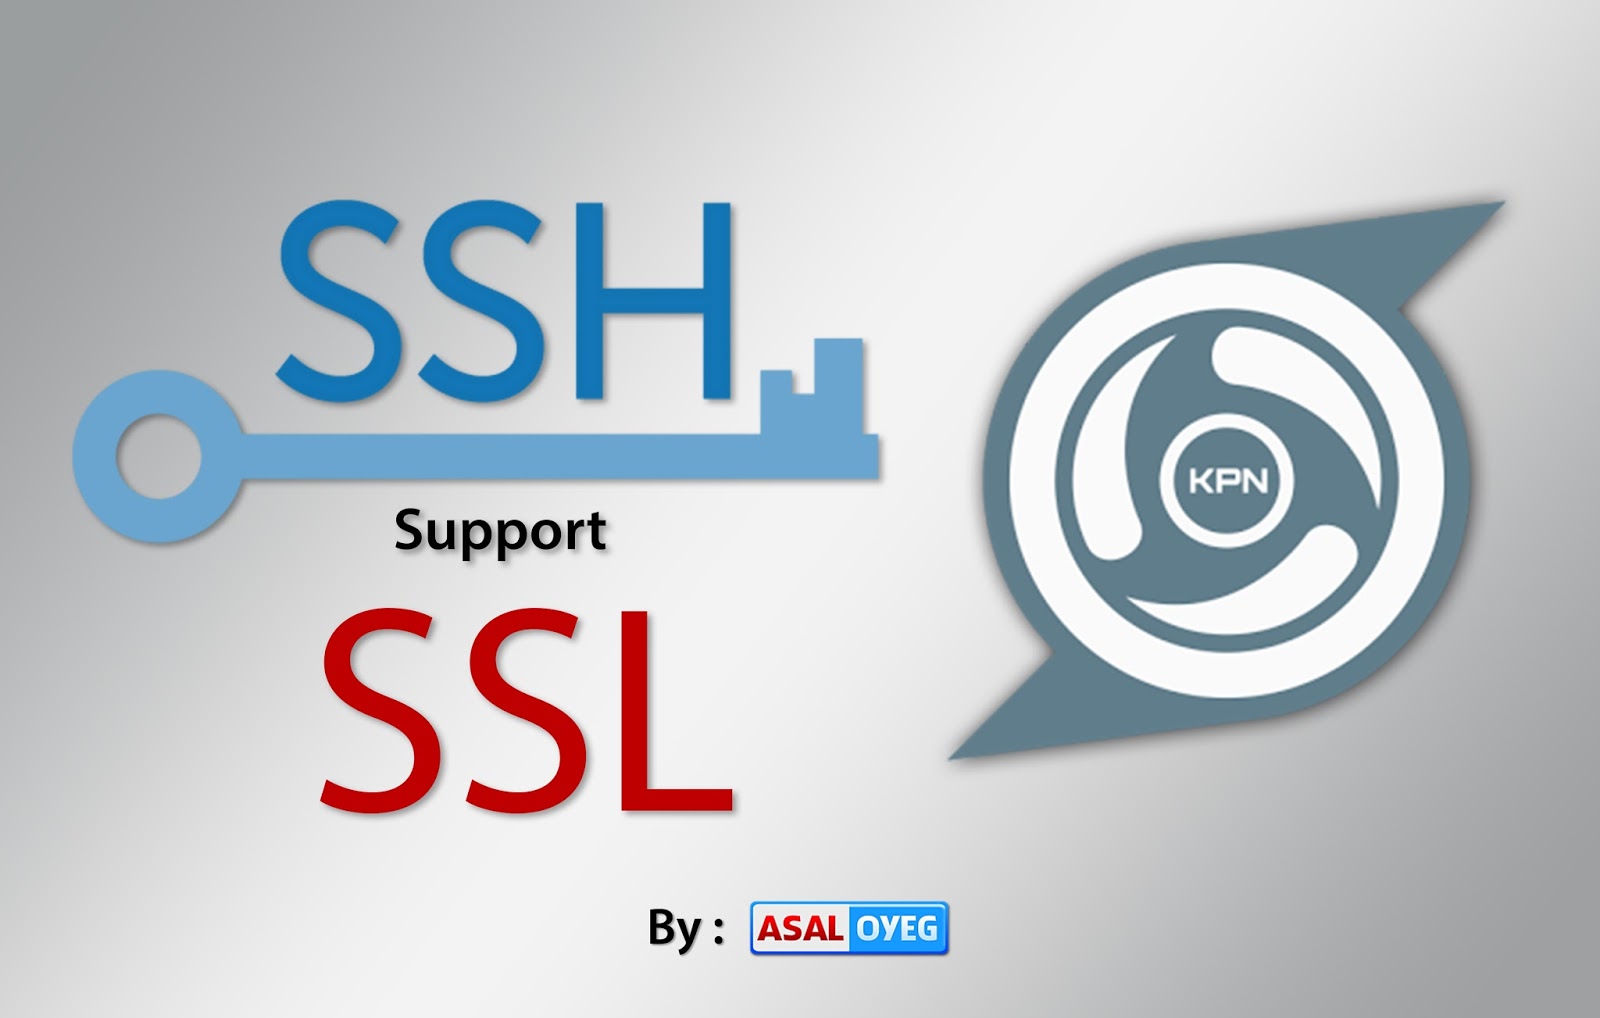 Ssh support support. SSH И SSL. Ovpn logo.